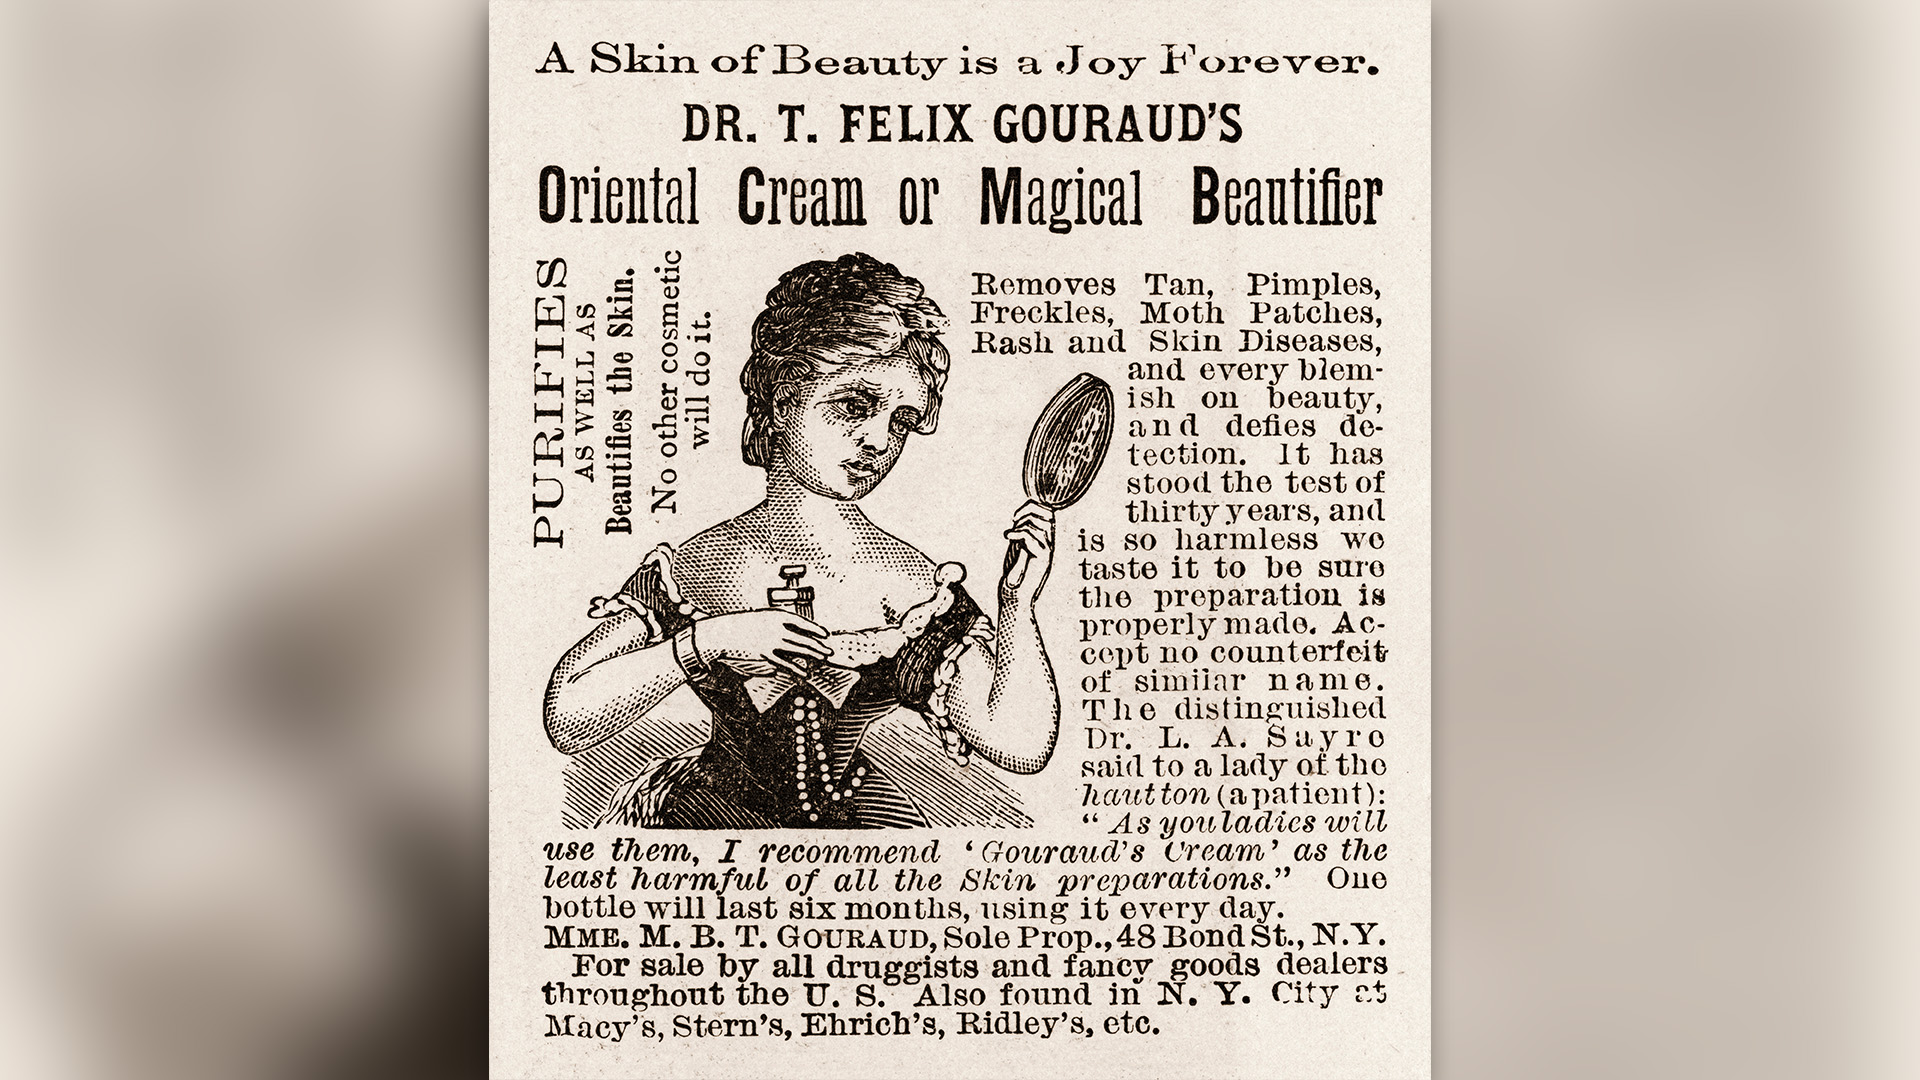 Реклама за „Ориенталски крем или вълшебен разкрасител“ на д-р Т. Феликс Гуро, 1886 г. Текстът обещава, че продуктът „Премахва тен, пъпки, лунички, петна от молци, обриви и кожни заболявания и всяко петно ​​върху красотата и не се открива.  Издържа теста от тридесет години и е толкова безвреден, че го опитваме на вкус, за да сме сигурни, че препаратът е направен правилно.  Рекламата, в която е посочен бизнес адрес на улица Бонд 48, Ню Йорк, се появи в илюстрования вестник на Франк Лесли.